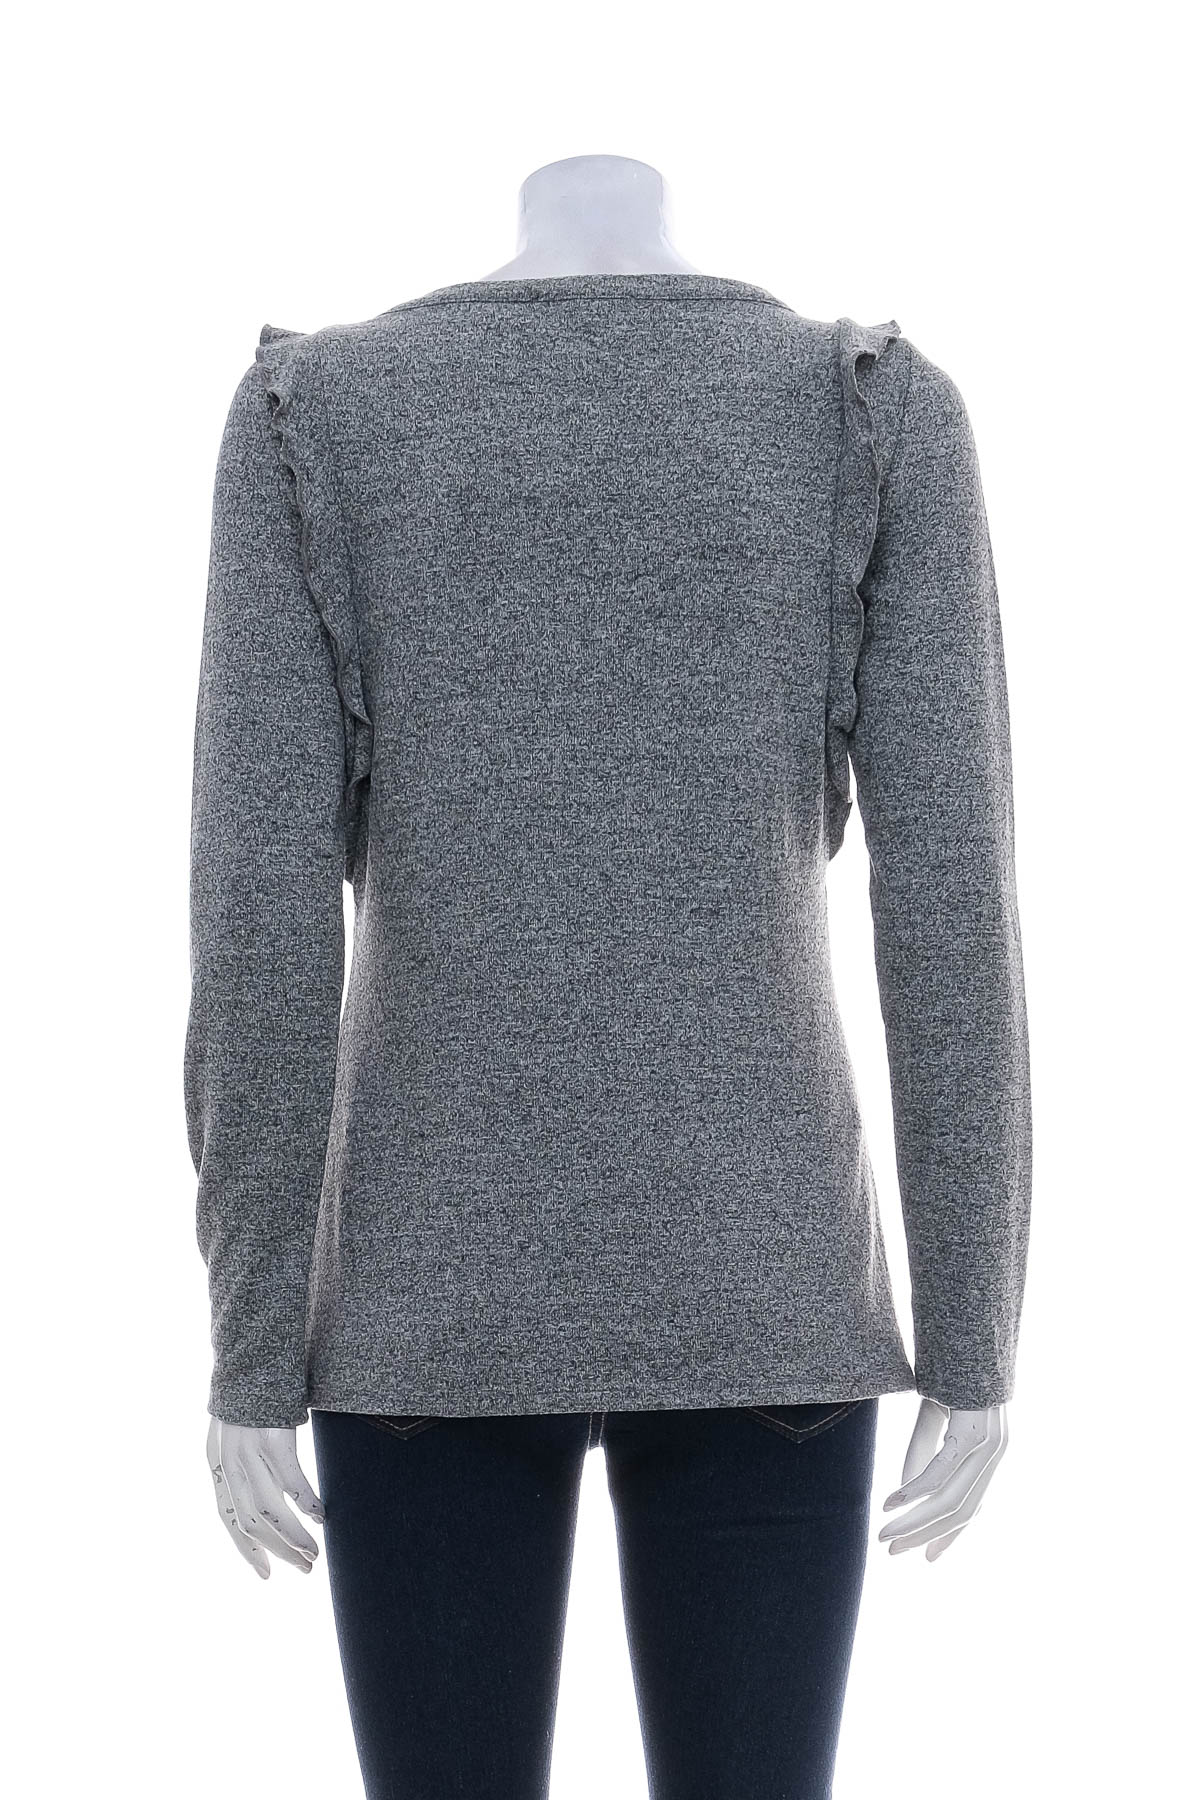 Women's sweater - Comma, - 1